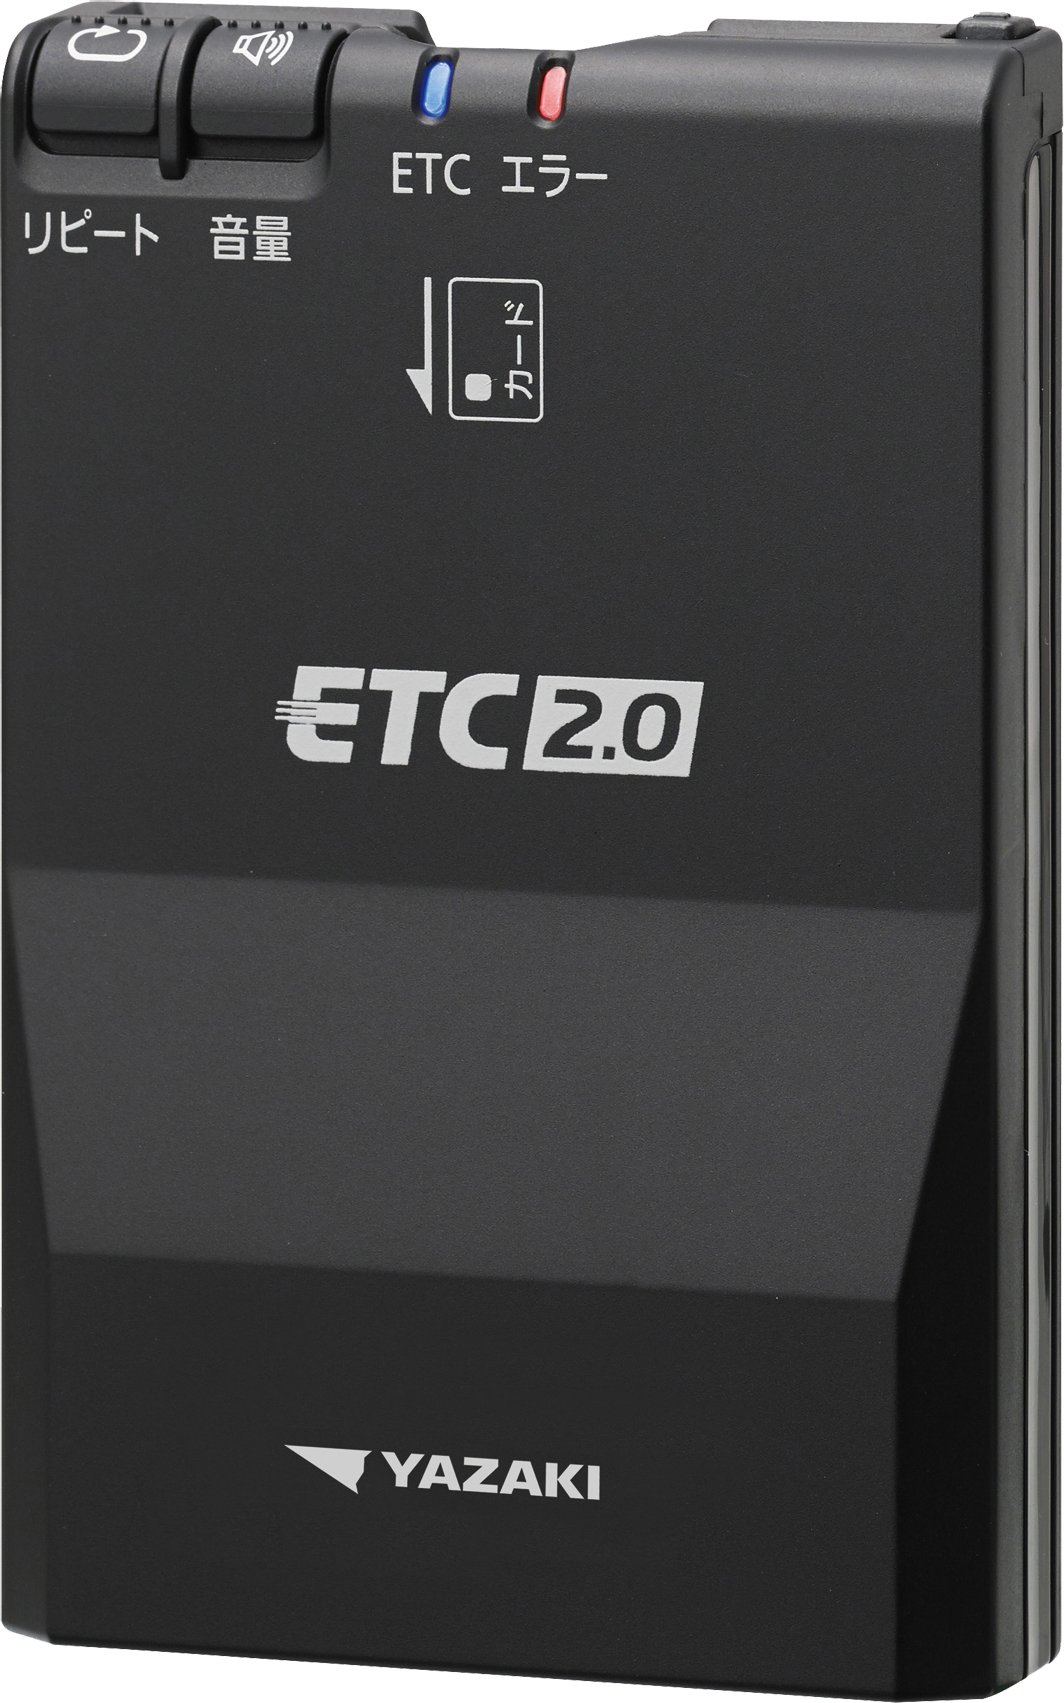 ETC2.0は導入メリットがあるのか？